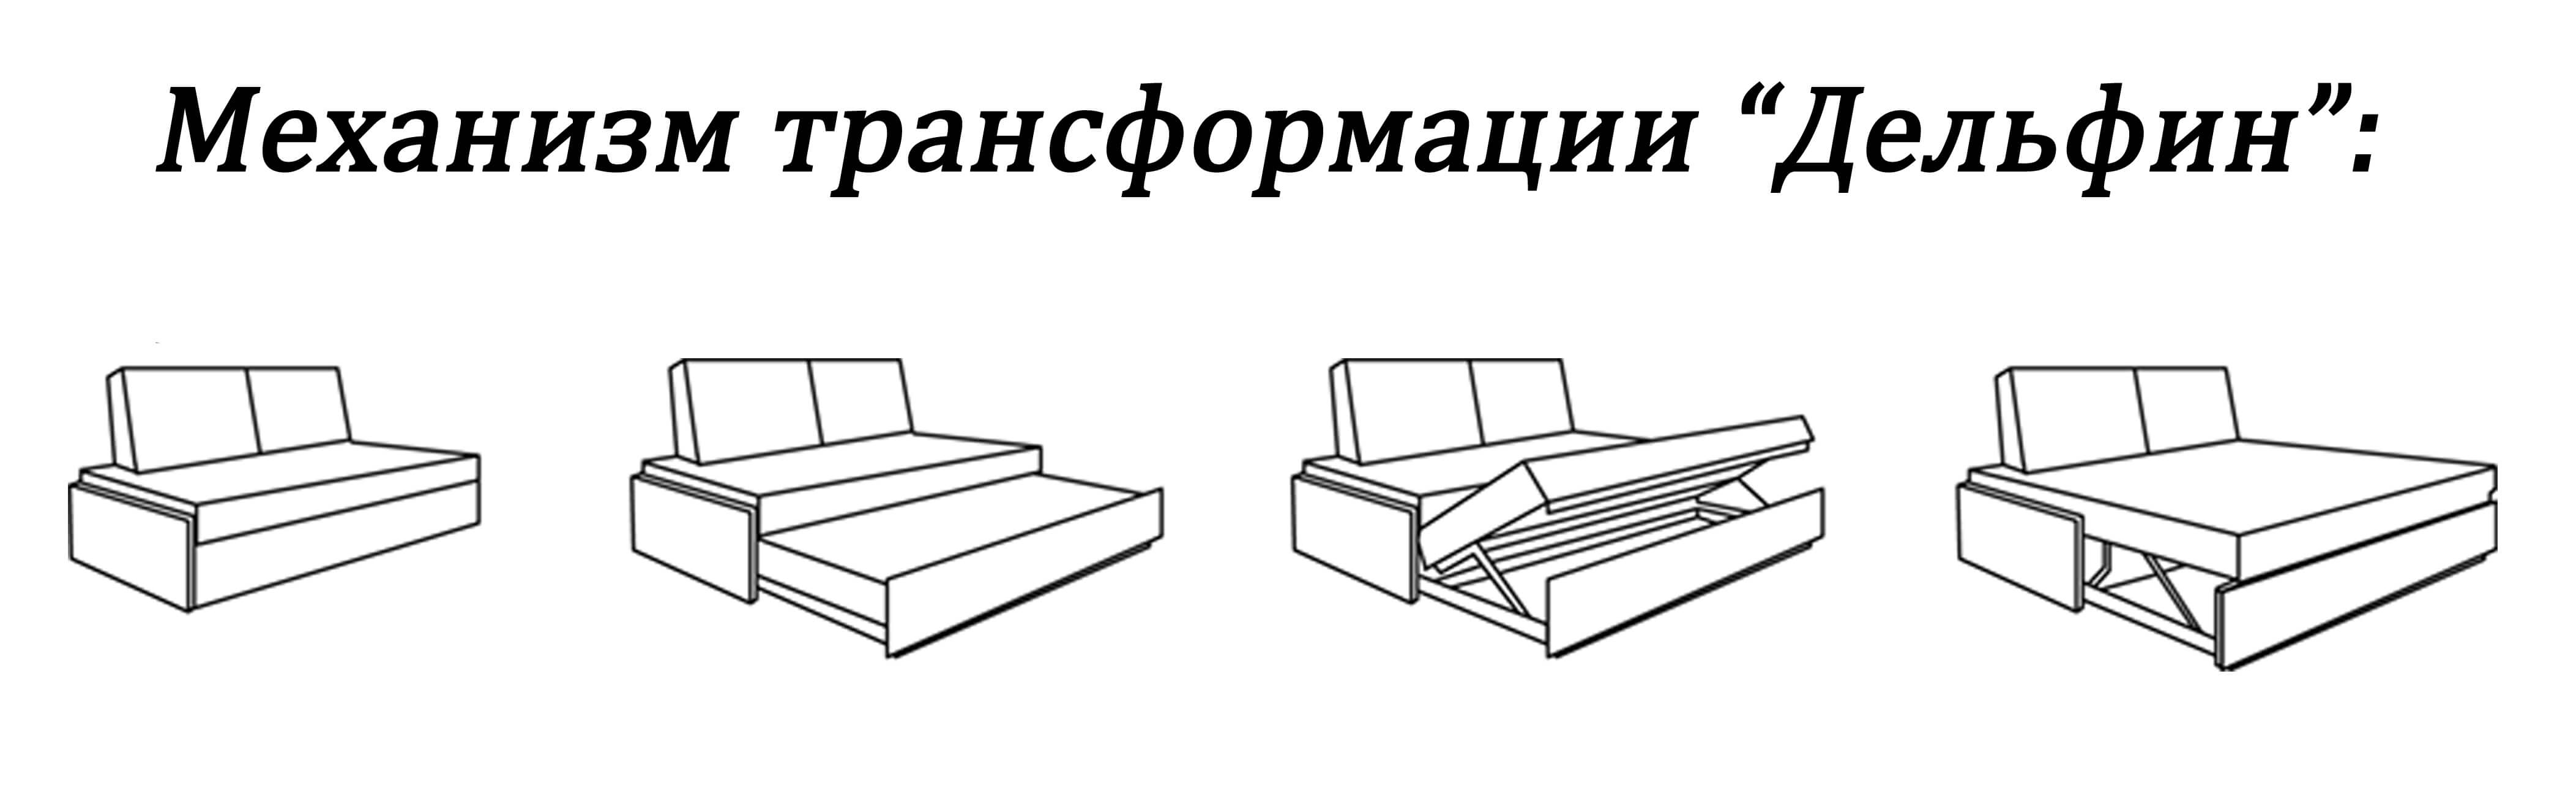 схема сборки выкатной кровати